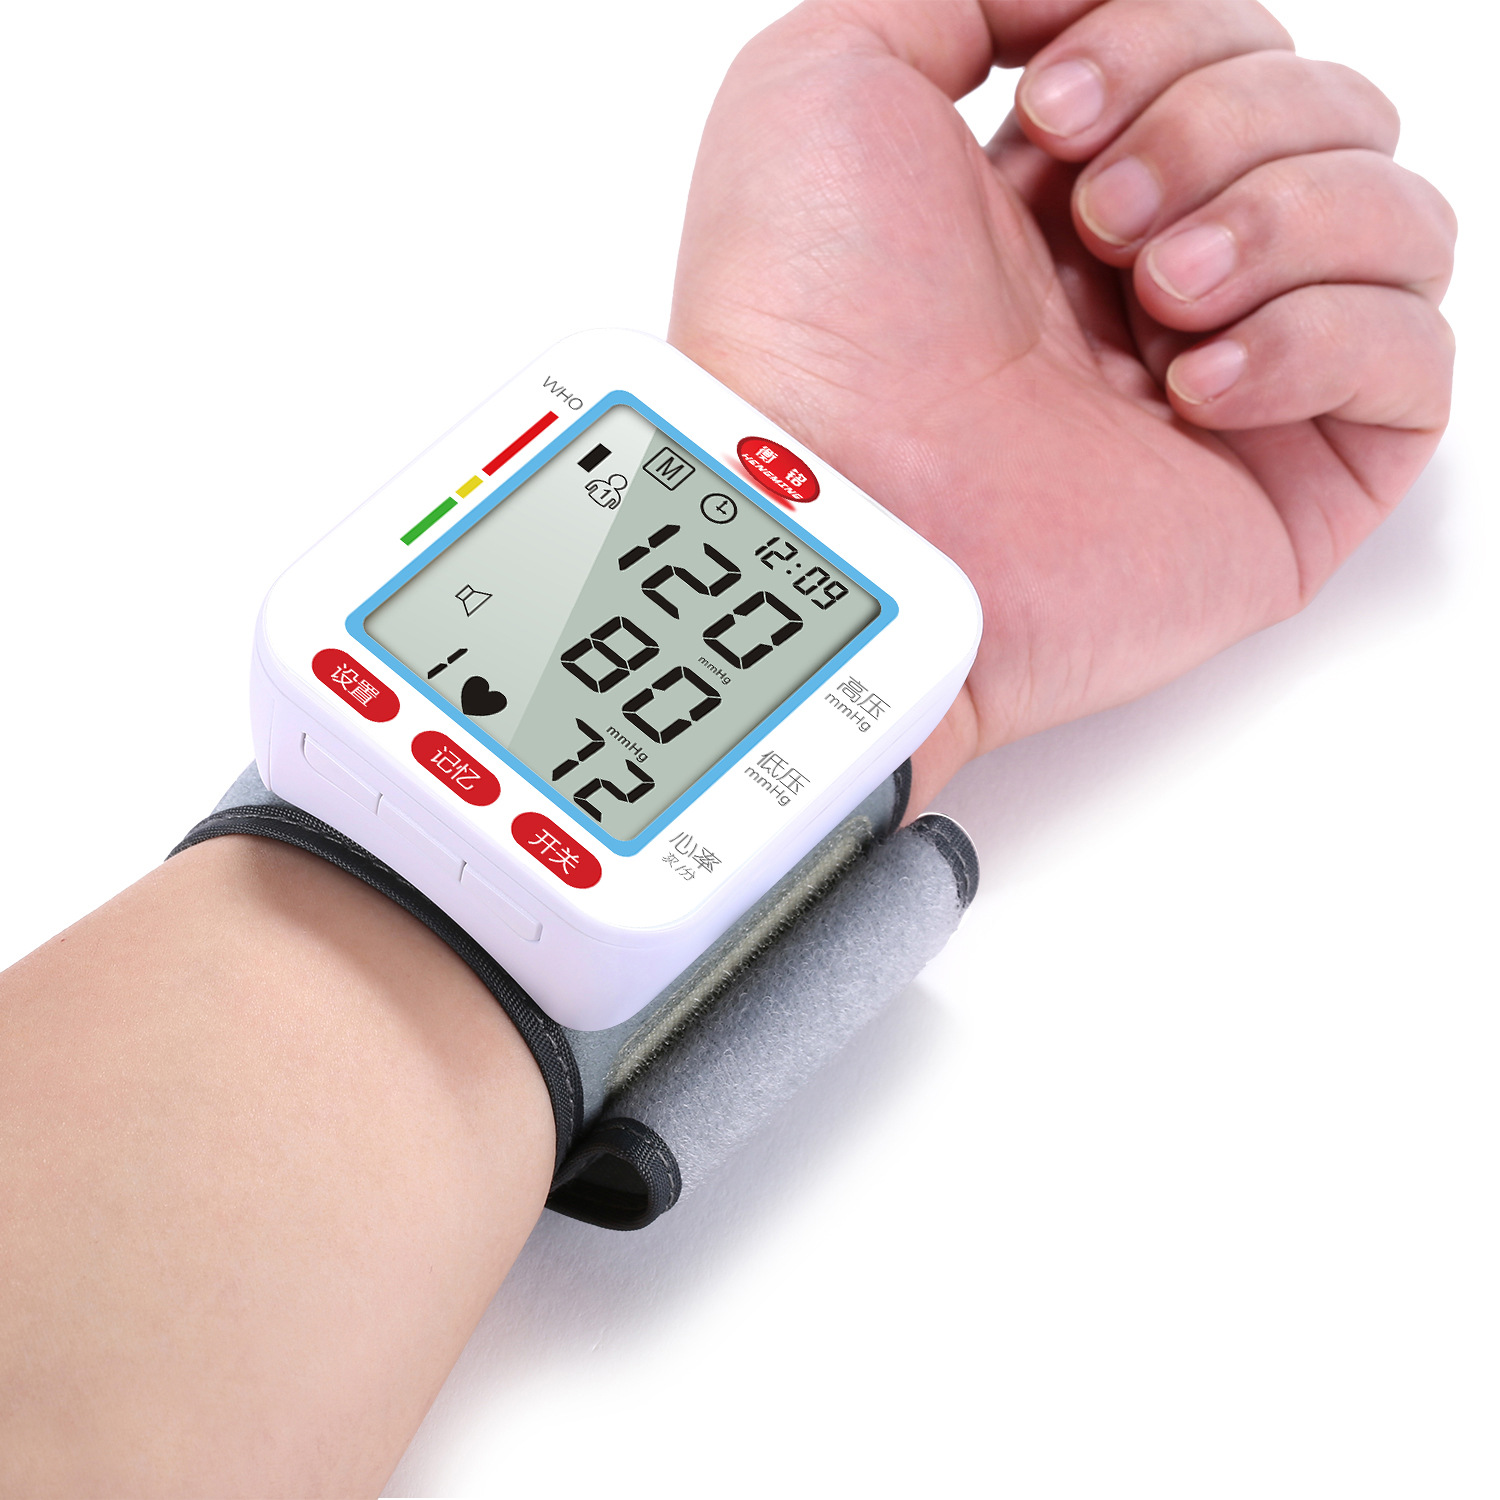 新型"腕式"血压计,测量0误差,3秒出血压,给老人健康